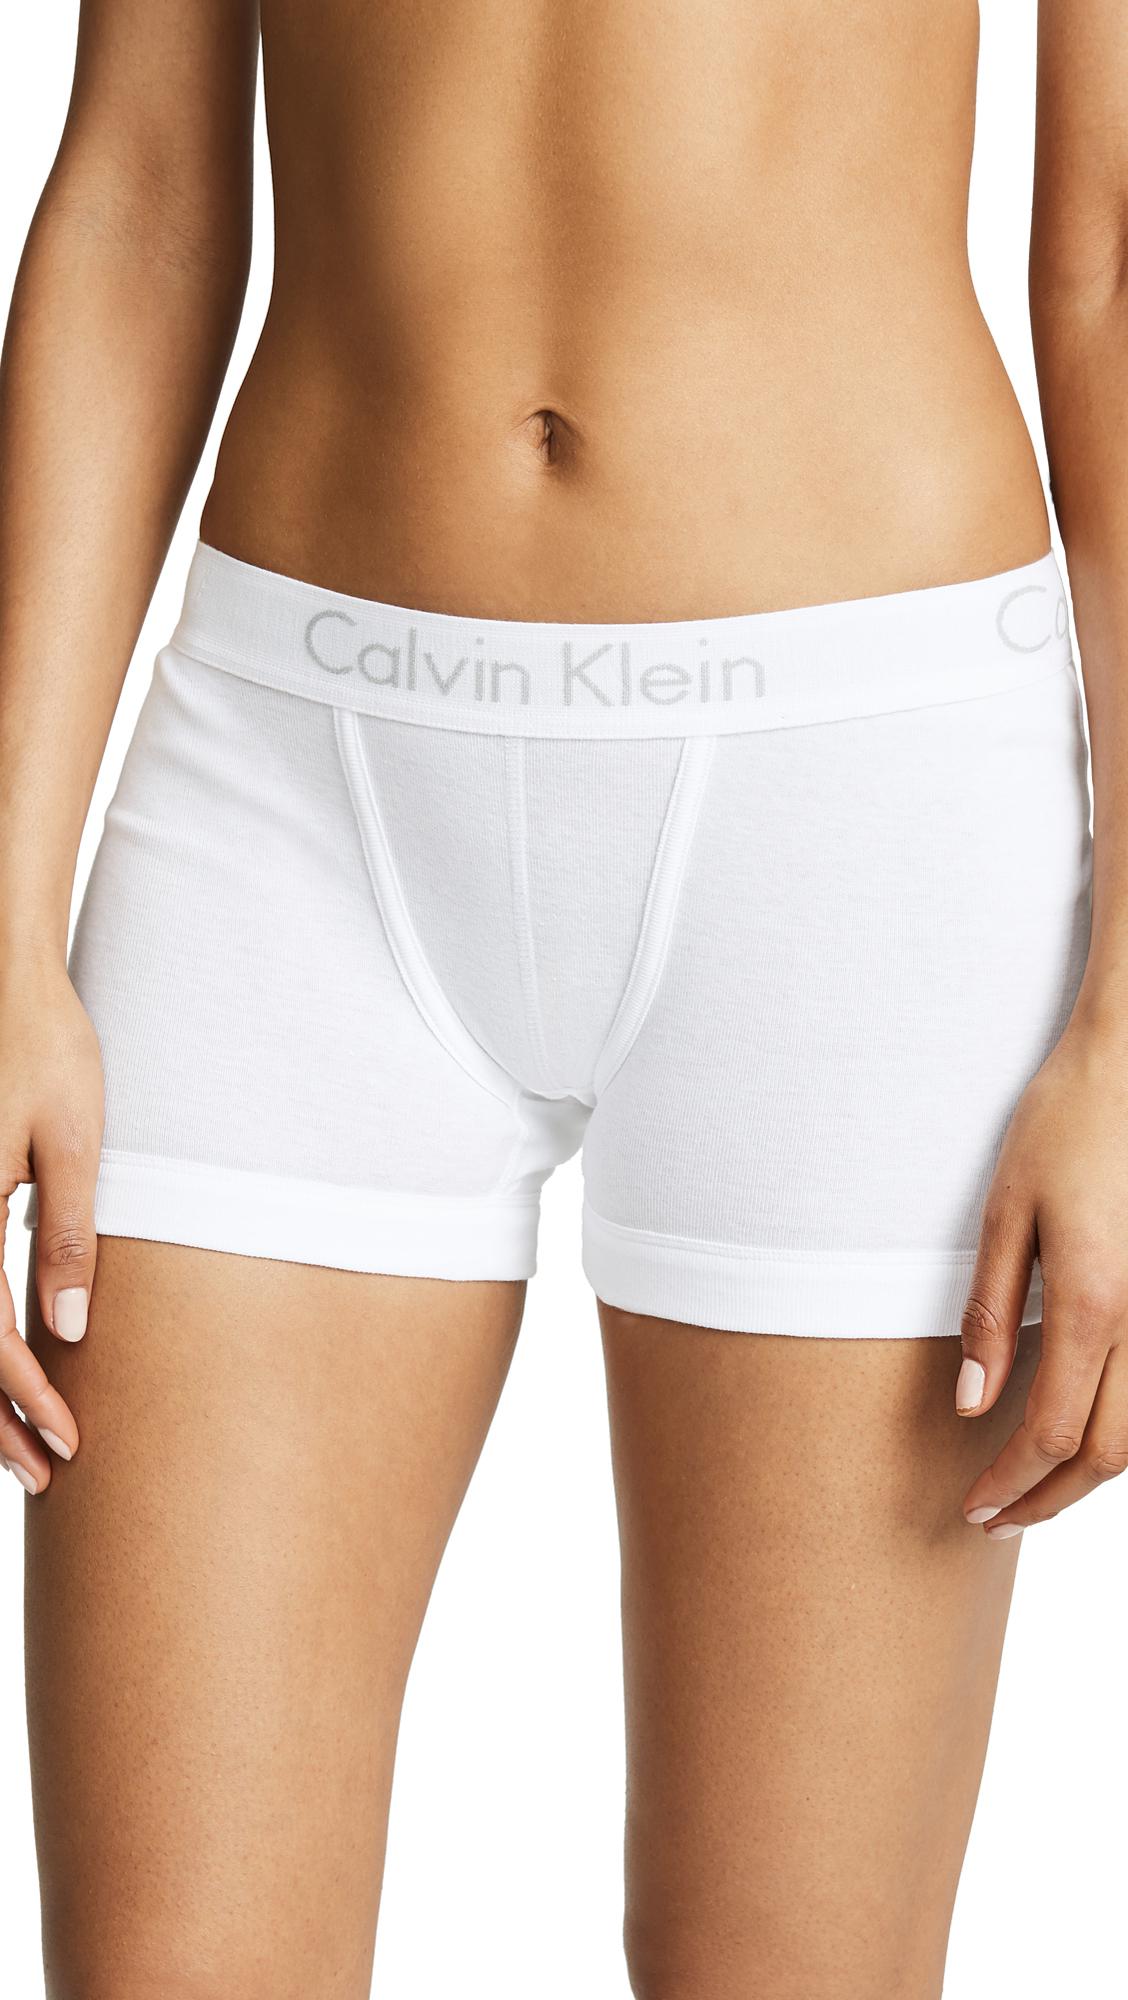 Calvin Klein Cotton Body Boy Shorts in White | Lyst